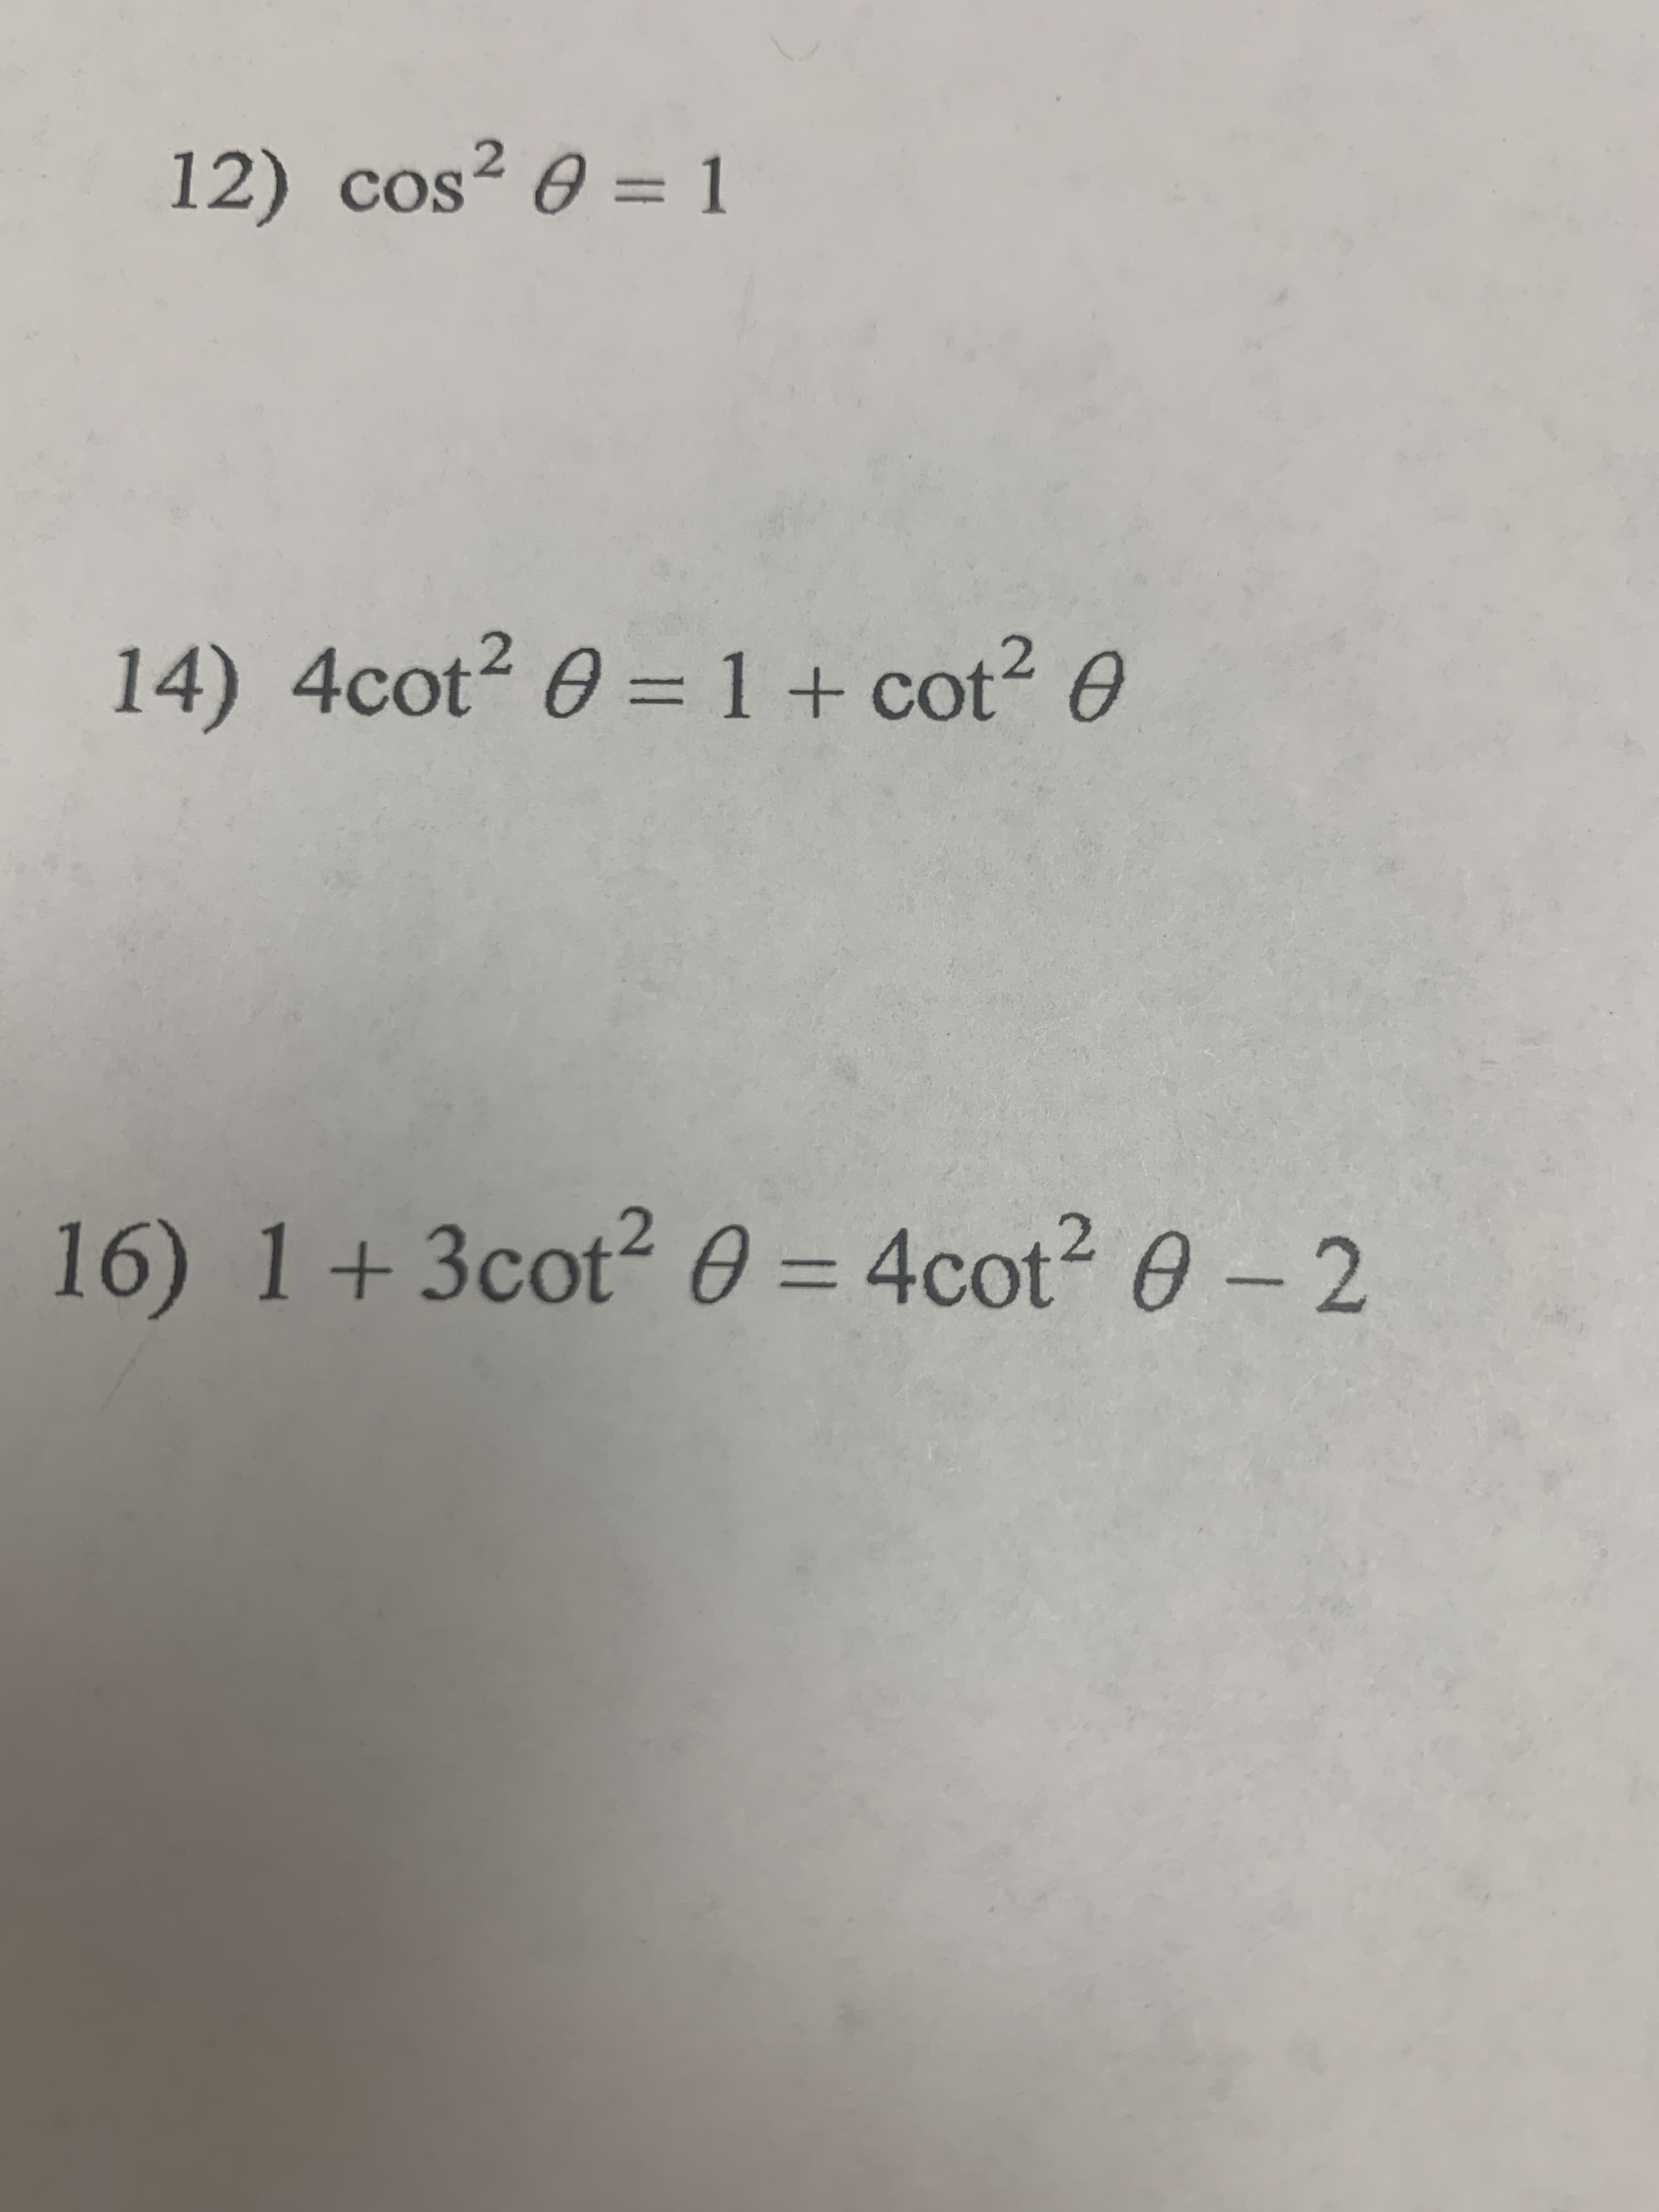 12) cos² 0 = 1
020
14) 4cot2 0 = 1+ cot? 0
16) 1+3cot2 0 = 4cot? 0-2
